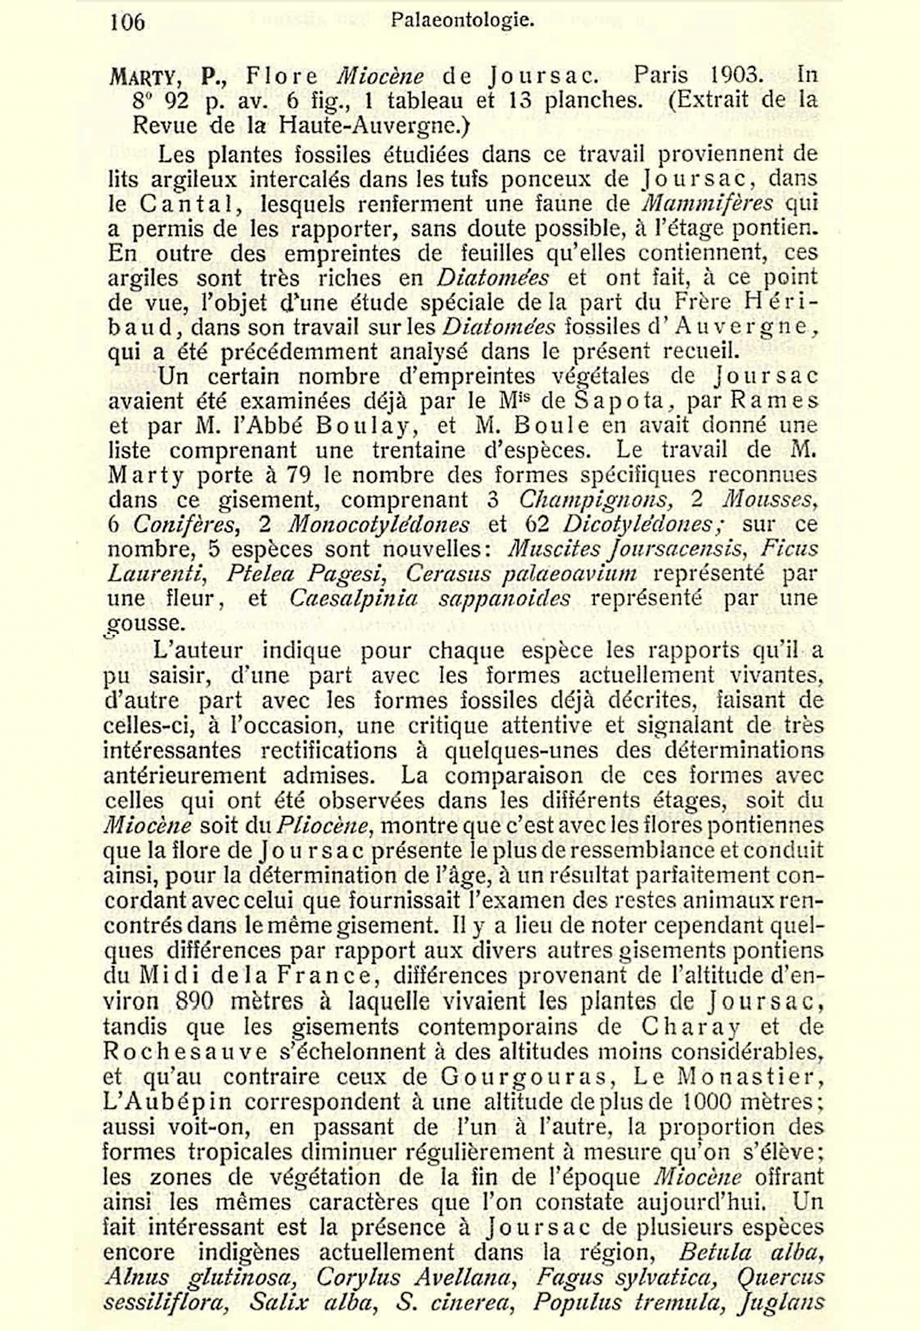 Extrait Flore miocène de Joursac (Cantal) 1903 MARTY Pierre (1903-1937) inventaire Guy PEGERE.jpg